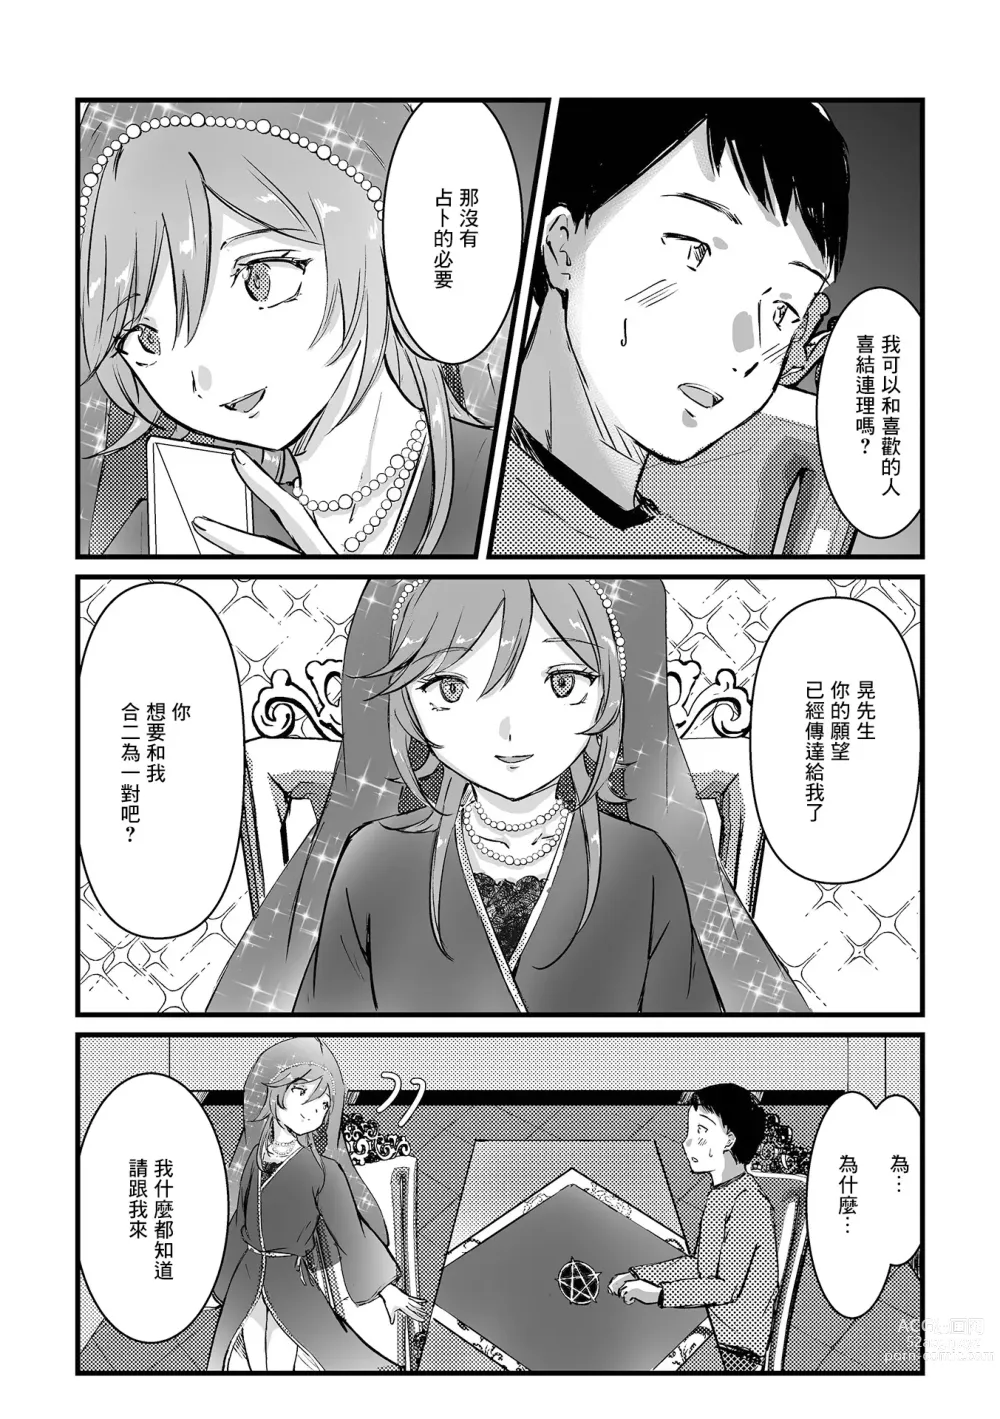 Page 6 of manga Uranaikan Anata no Yume o Kanaemasu